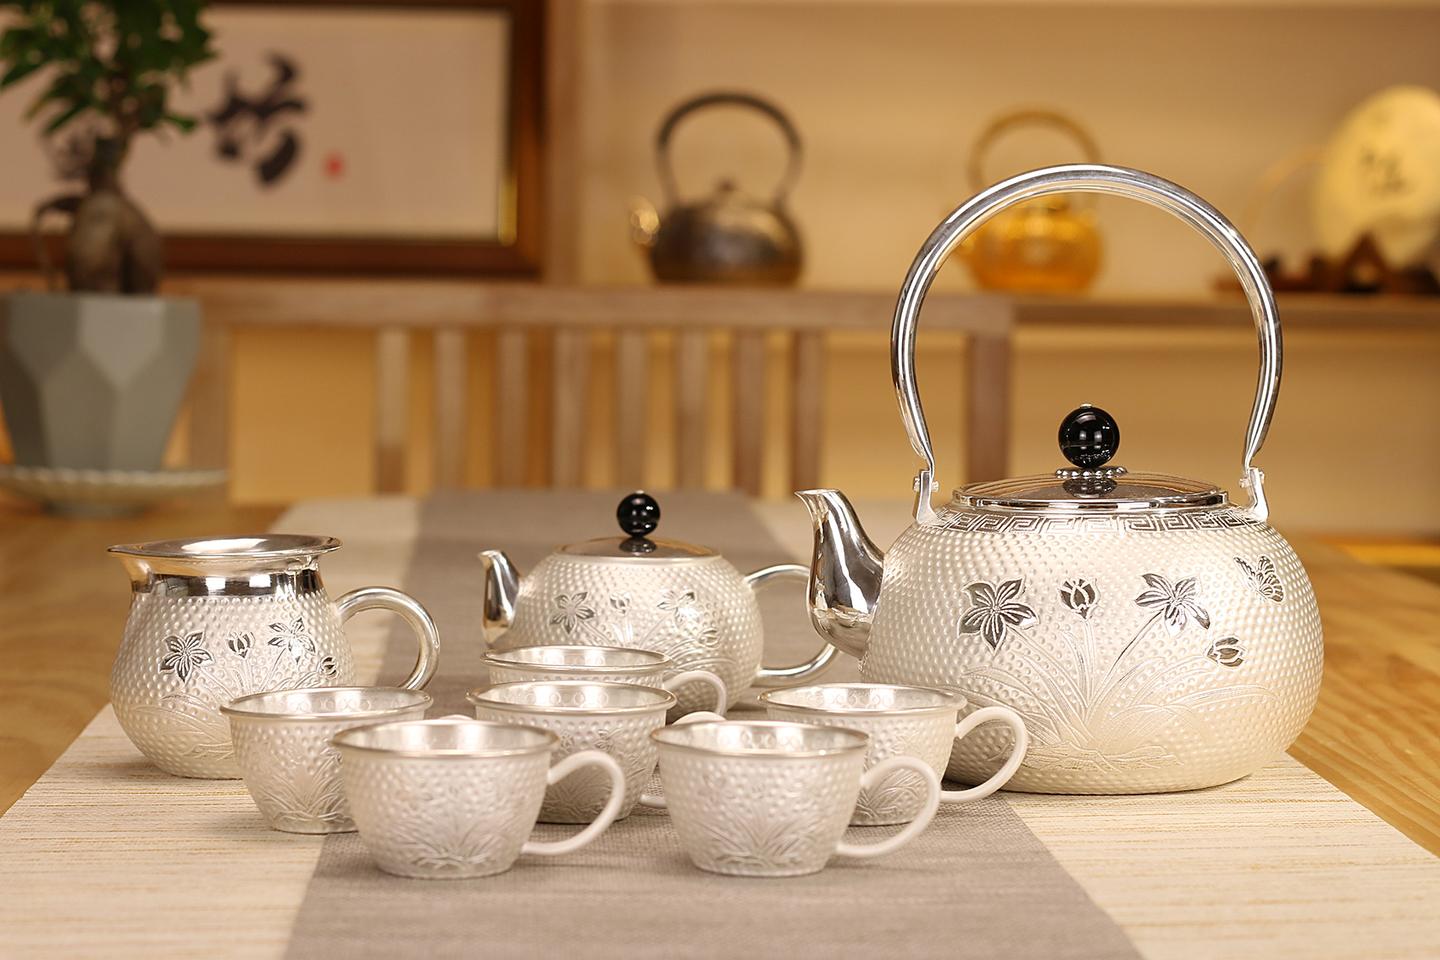 尚壶坊:为什么要用银壶喝茶呢?